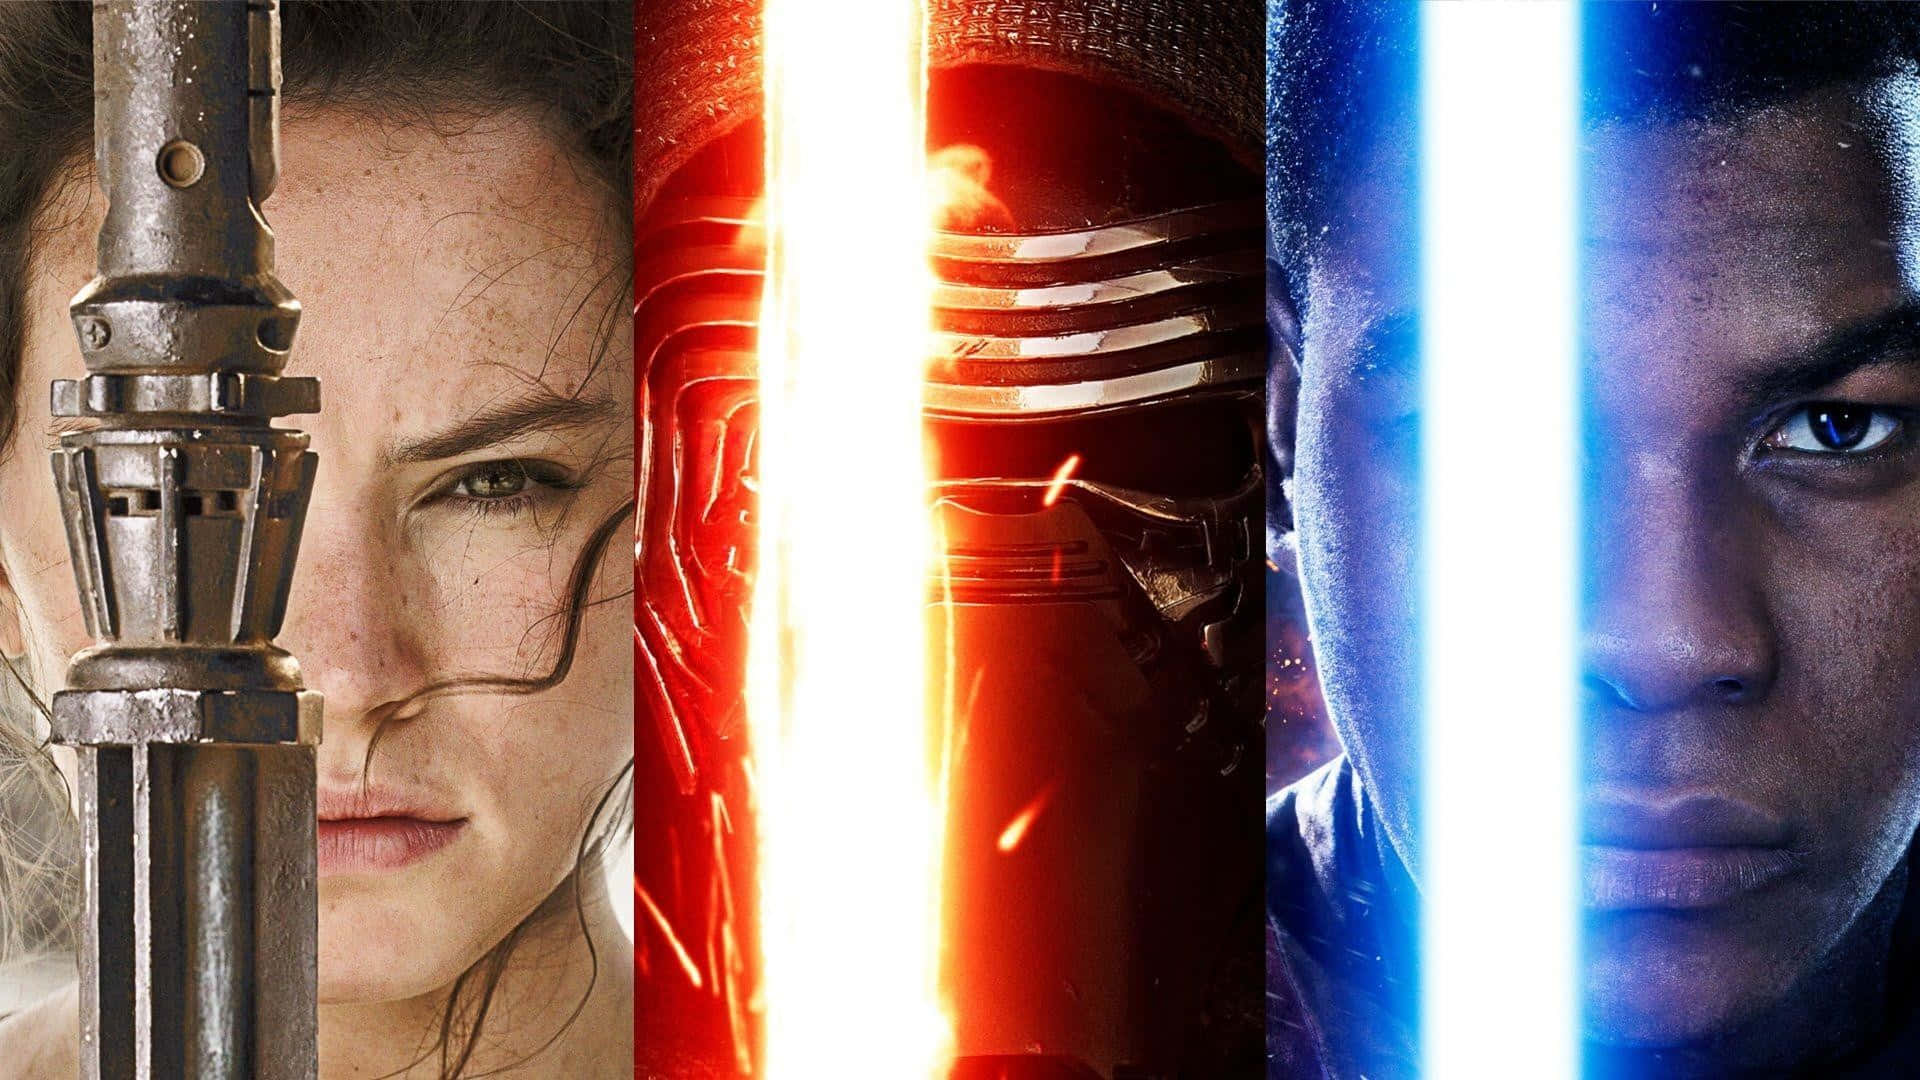 Rey fra Star Wars - en blæser og hendes skinnede lightsaber klar til kamp Wallpaper